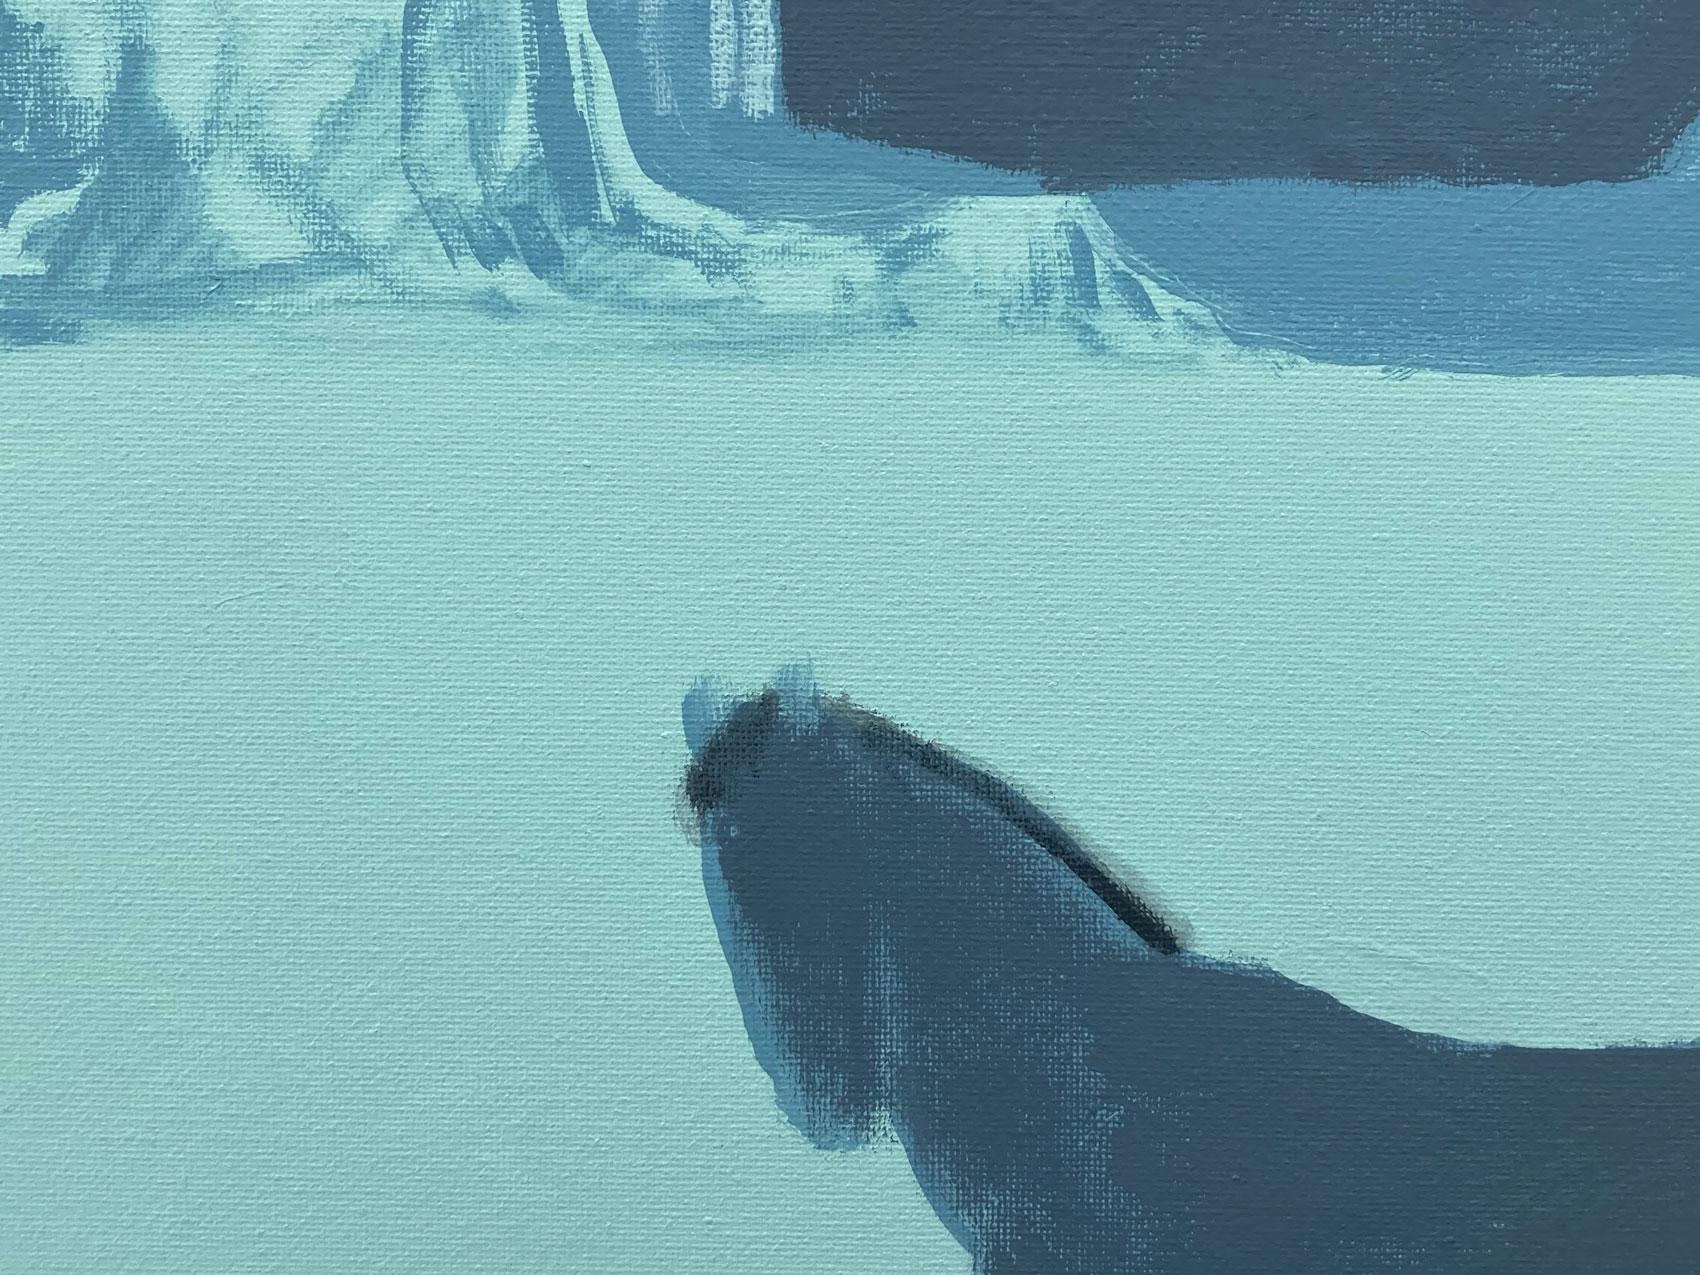 <p>Kommentare des Künstlers<br>Der Künstler Nick Bontorno malt ein einsames Pferd, das in einer weiten Schlucht steht. Die blassblauen Töne und die minimale Darstellung zeigen eine entspannte Resonanz in der kargen pastoralen Landschaft. Seine